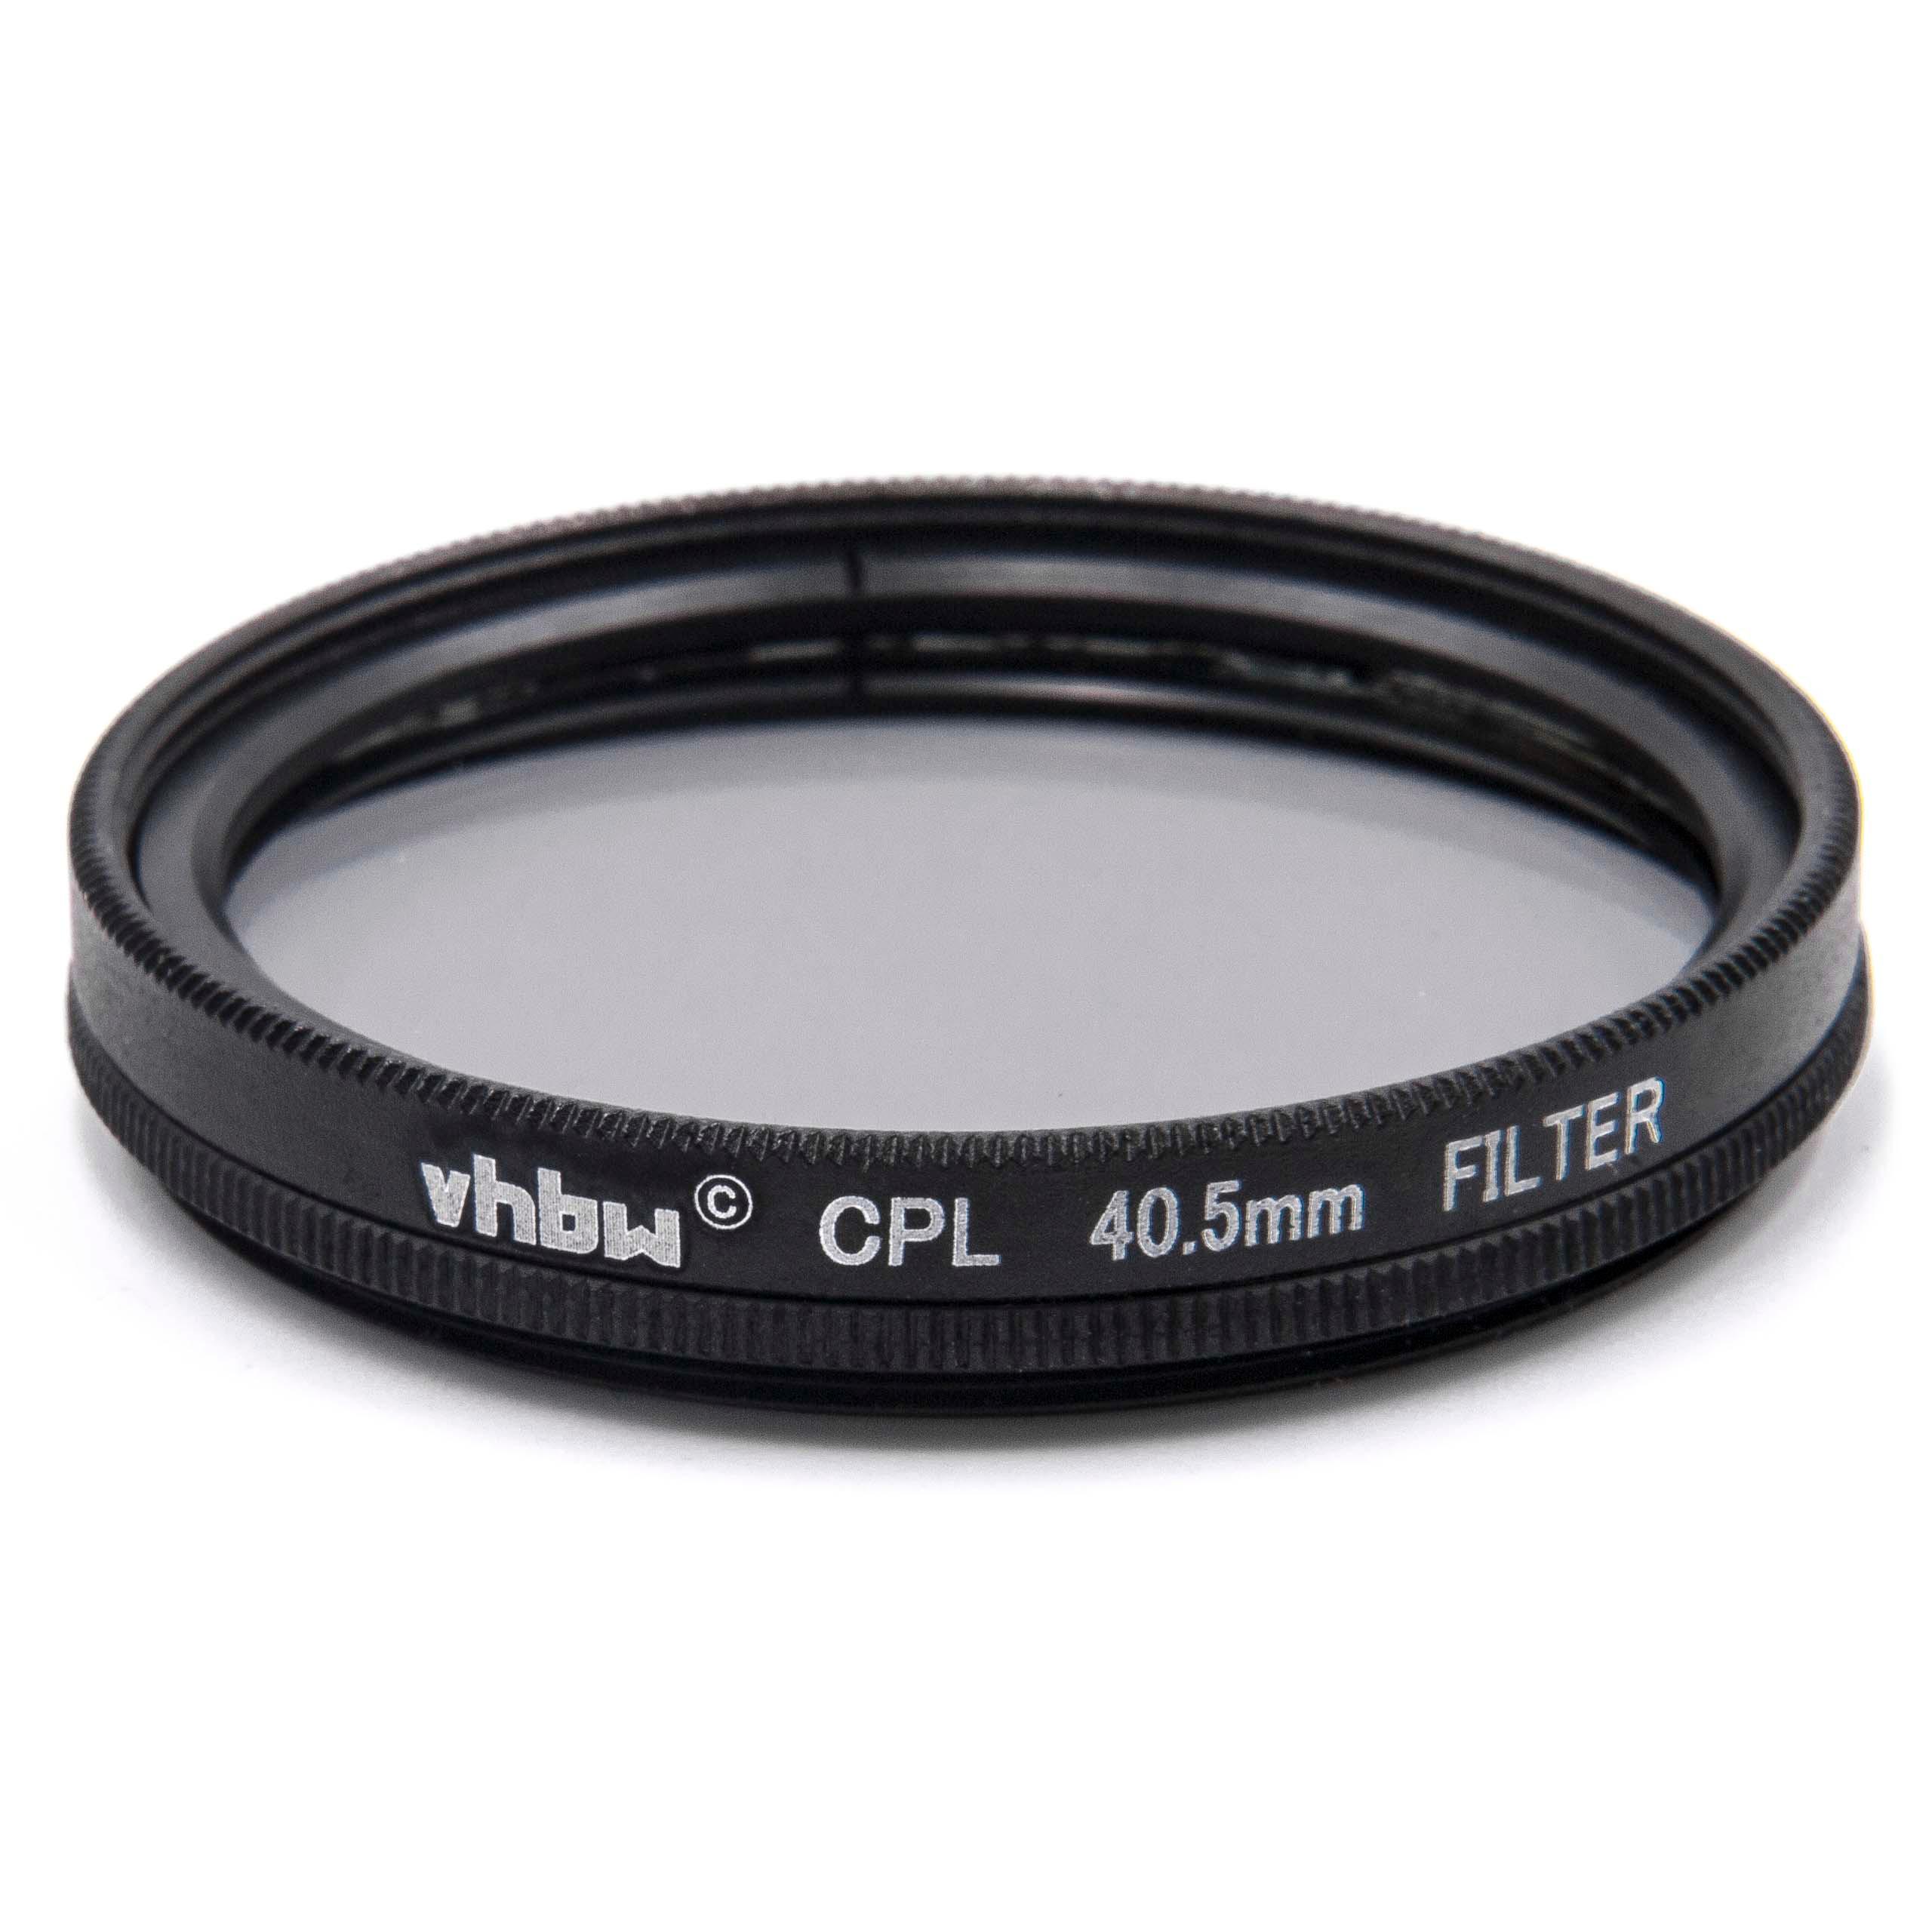 Filtr polaryzacyjny 40,5mm do różnych obiektywów aparatów - filtr CPL 